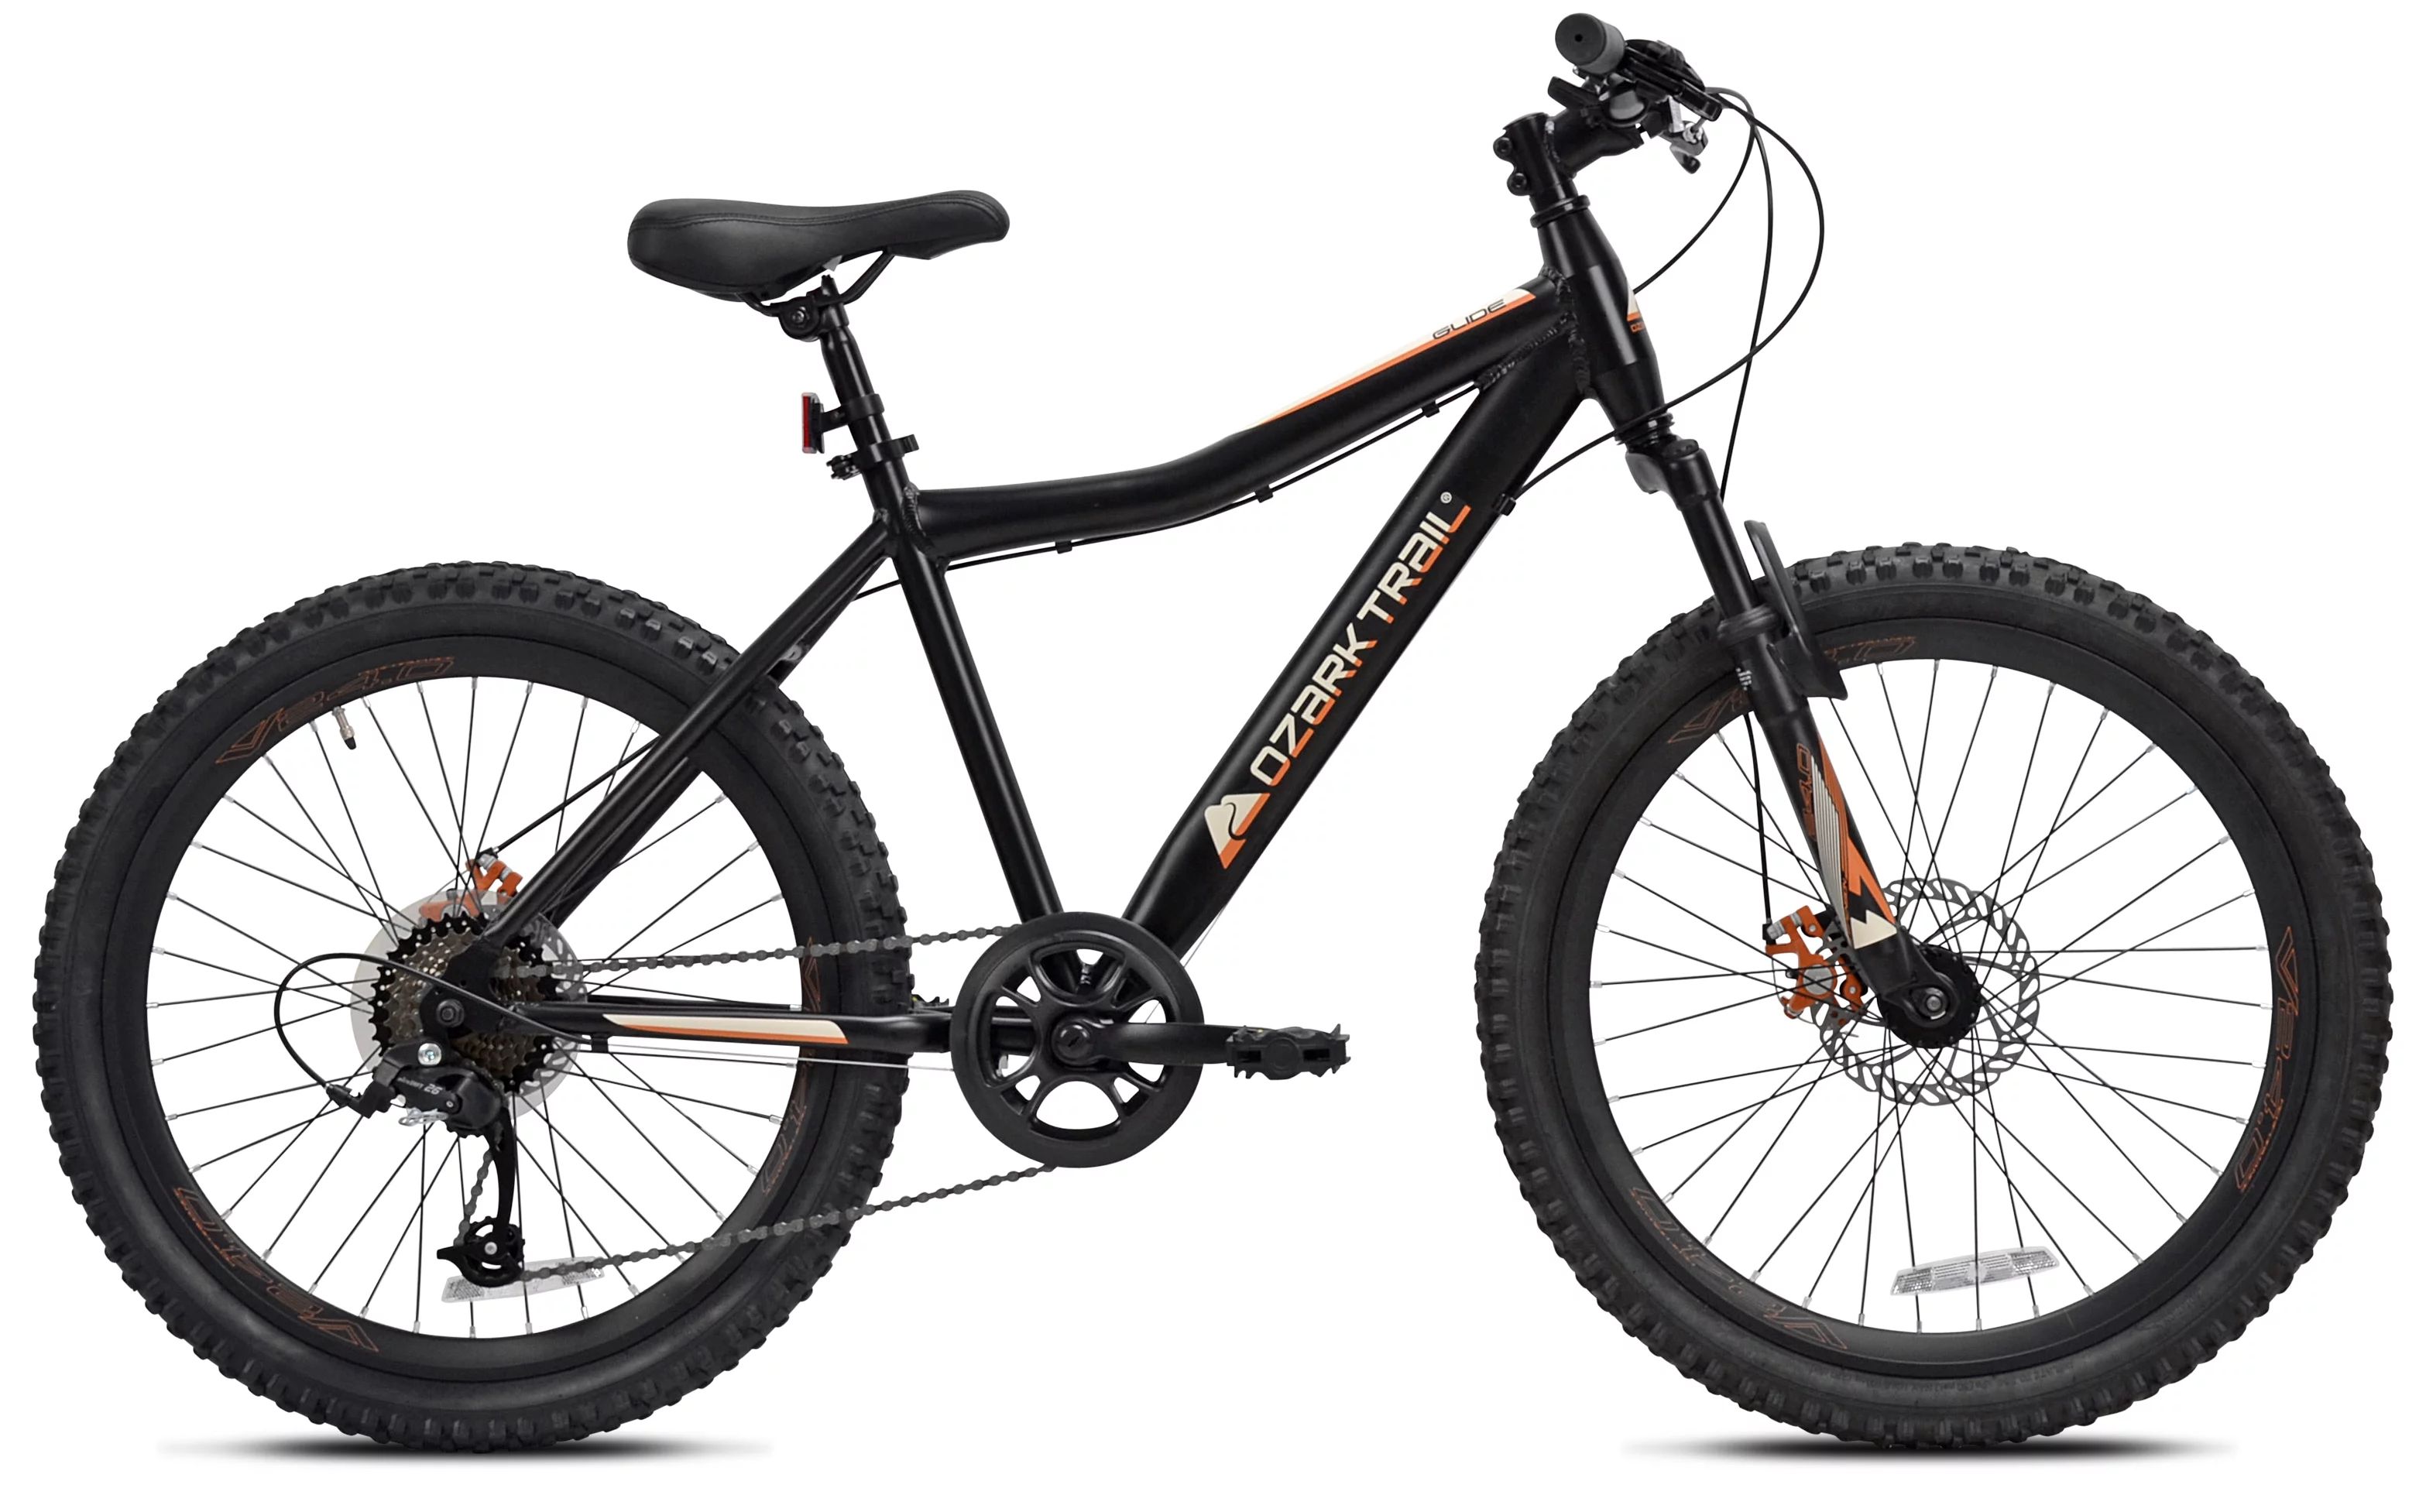 Ozark Trail 24" Glide Mountain Bike, 8 Speed, Black, Teen, Unisex | Walmart (US)